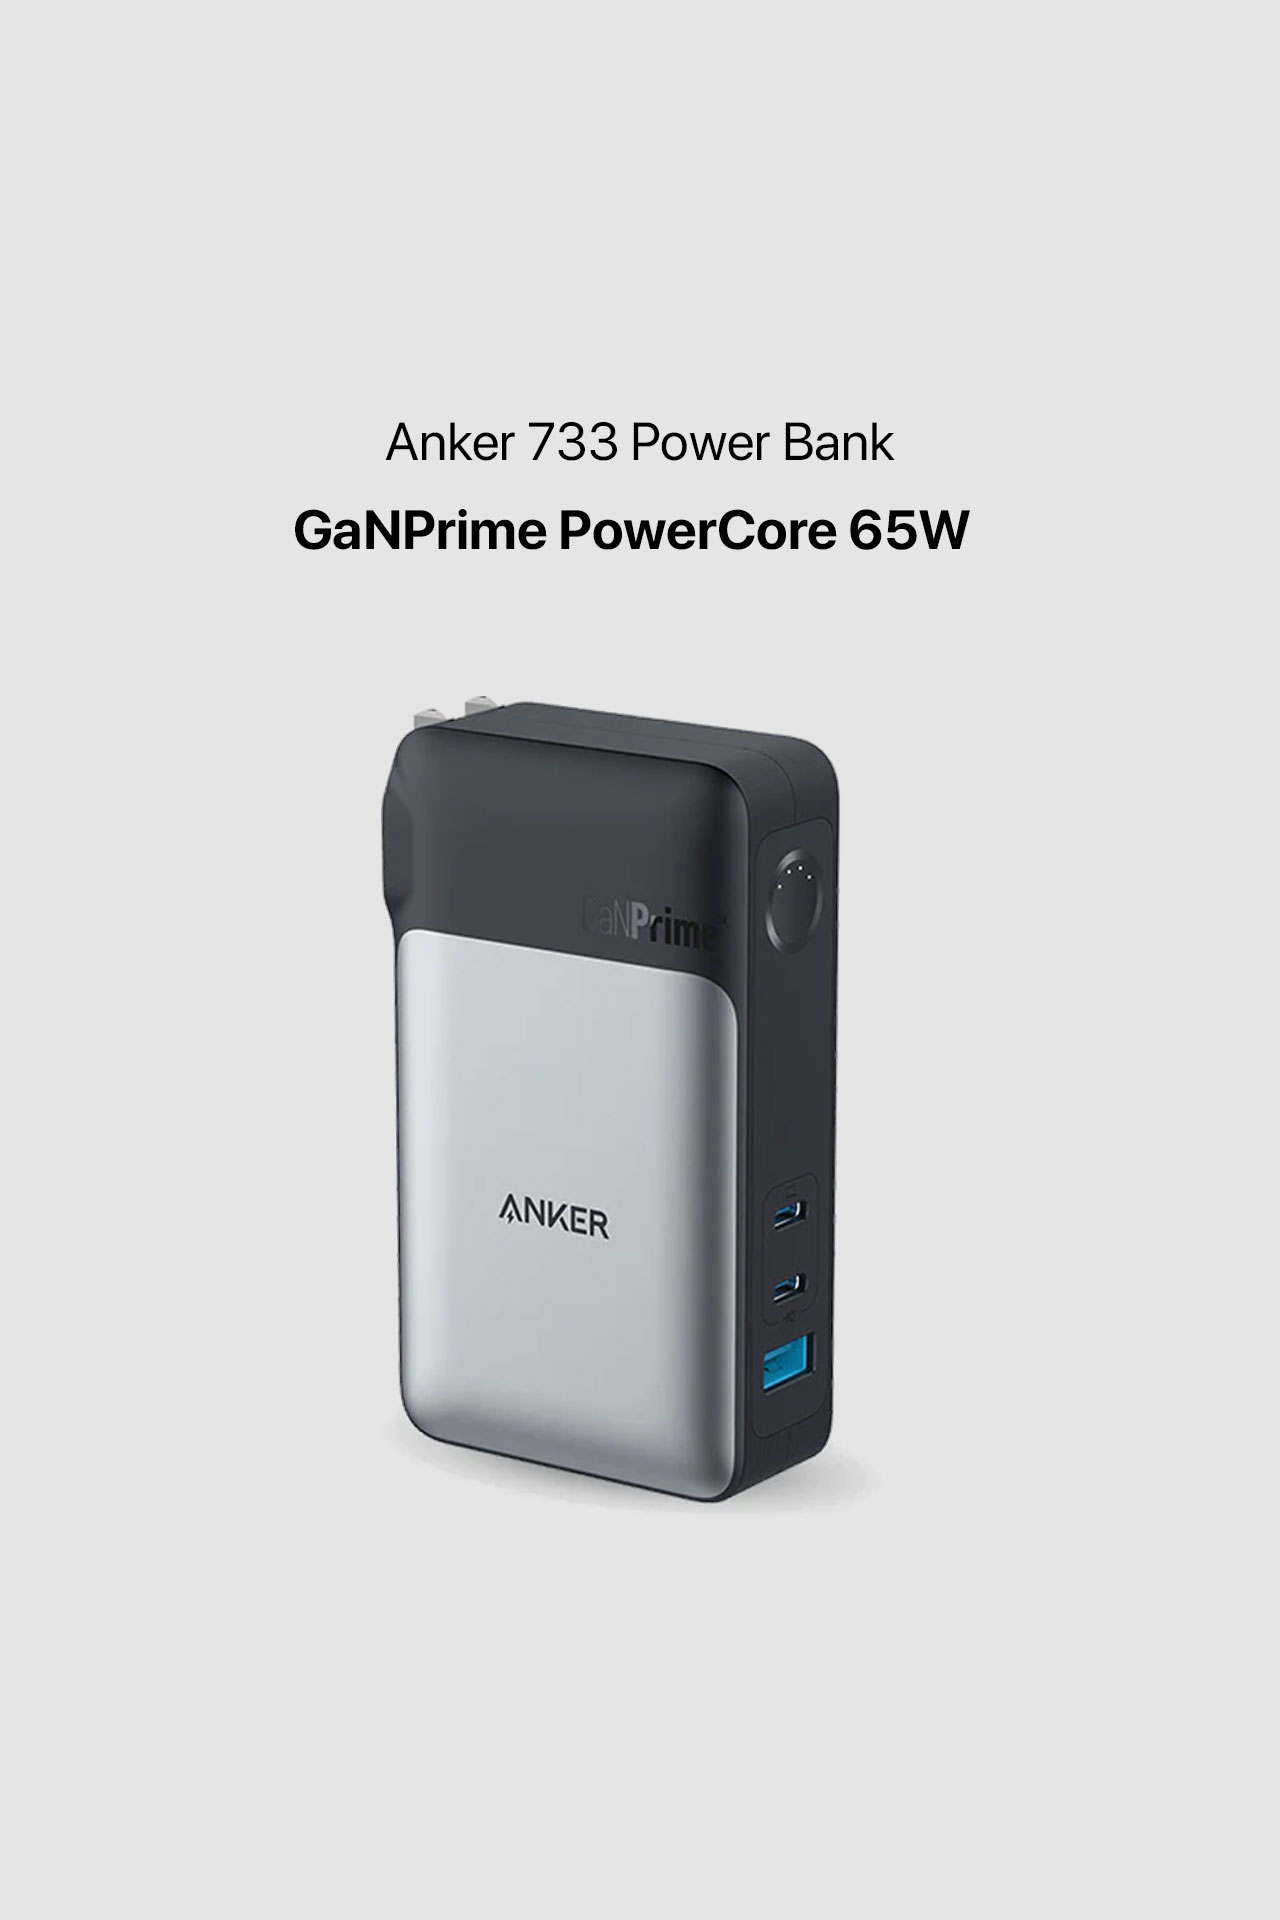 Anker 733 Power Bank (GaNPrime PowerCore 65W)